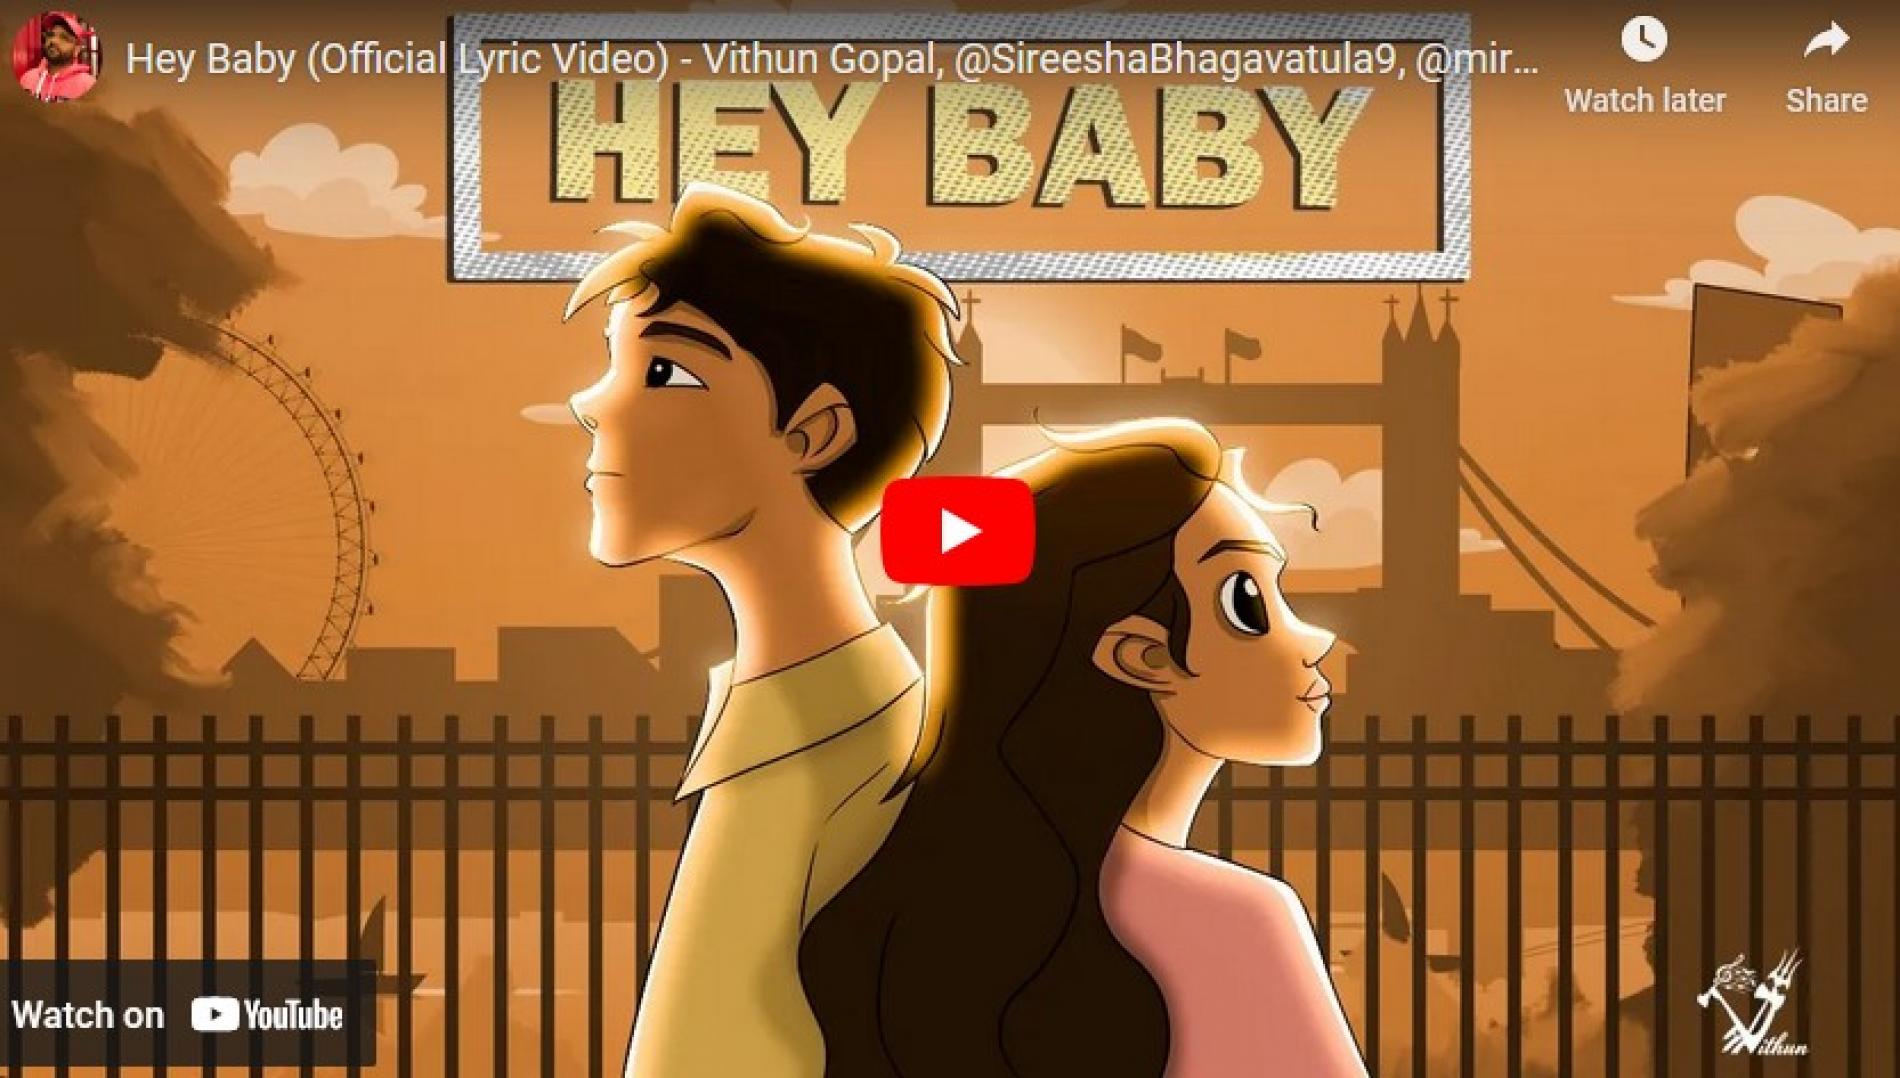 New Music : Hey Baby (Official Lyric Video) – Vithun Gopal, @SireeshaBhagavatula9, @mirunpradhap